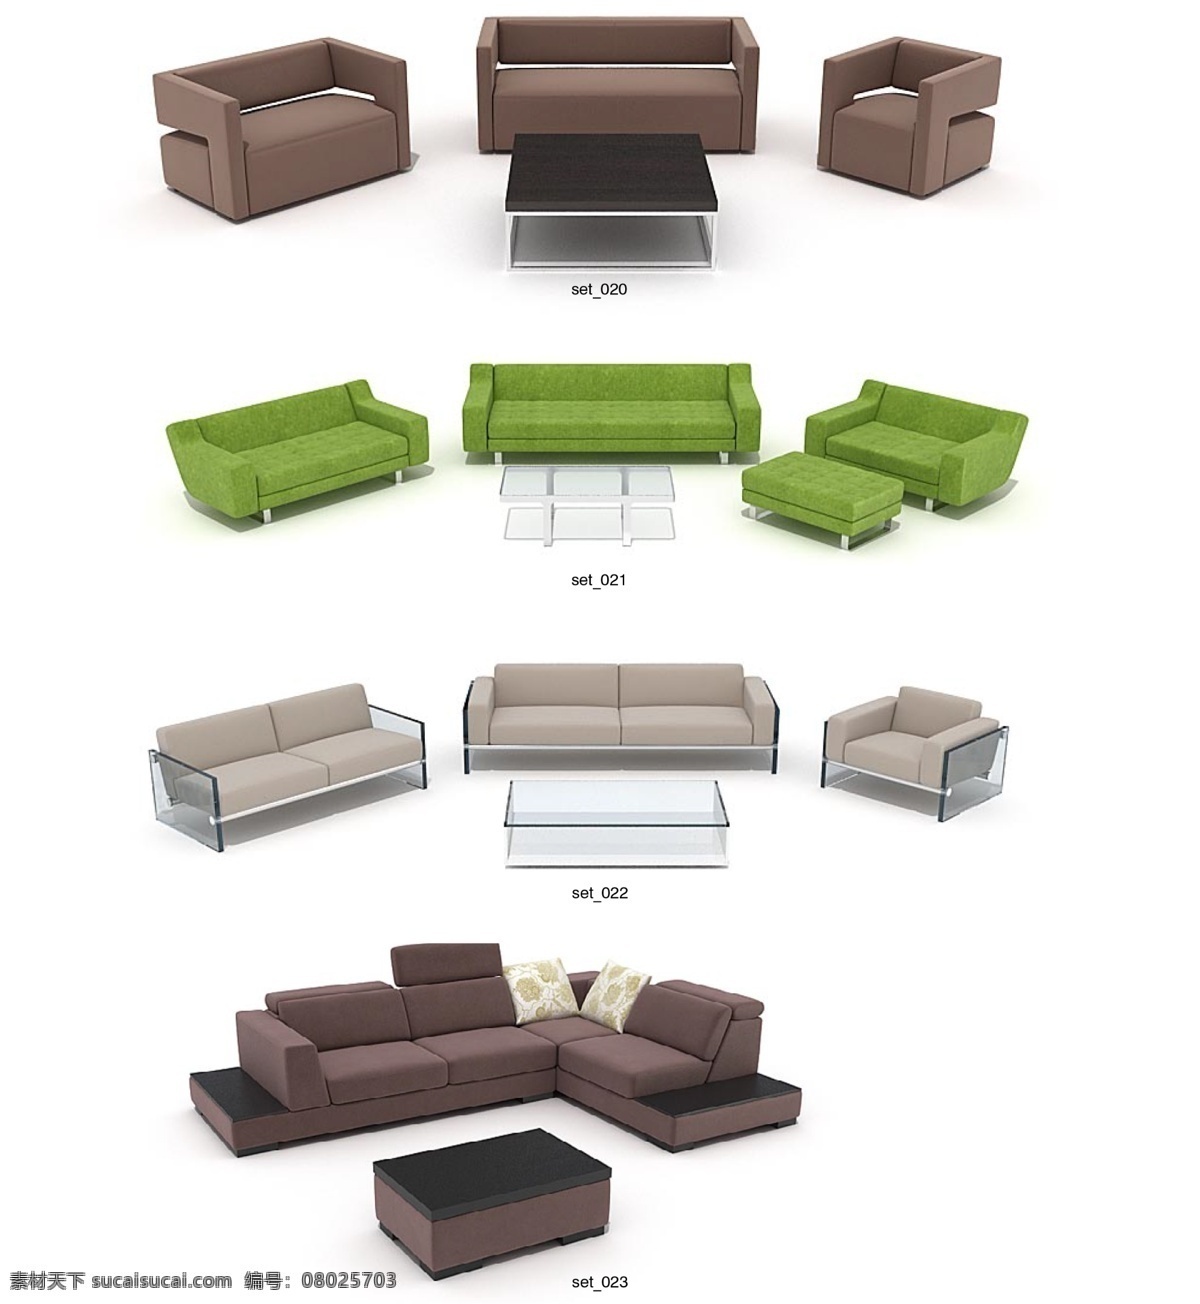 精美 沙发椅子 茶几 max 模型 带 材质 贴图 3d家具模型 3d模型素材 3d设计模型 办公椅 创意沙发 家具模型 欧式家具 沙发 3d 精美家具模型 白色